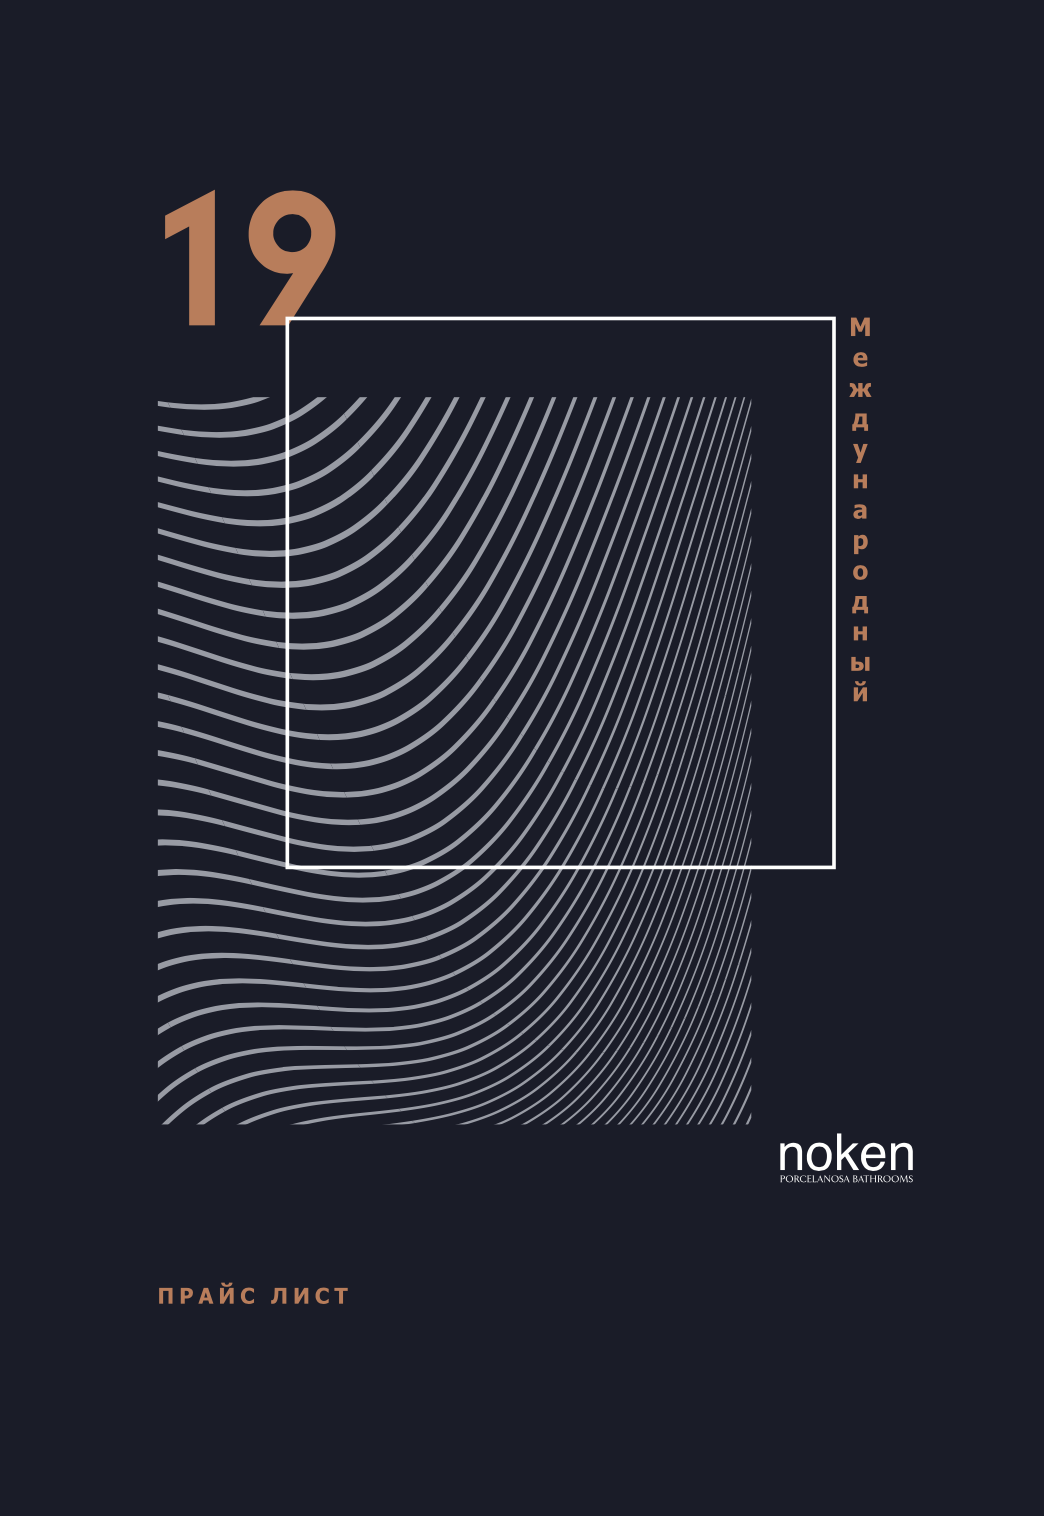 Генеральный каталог Noken 2019